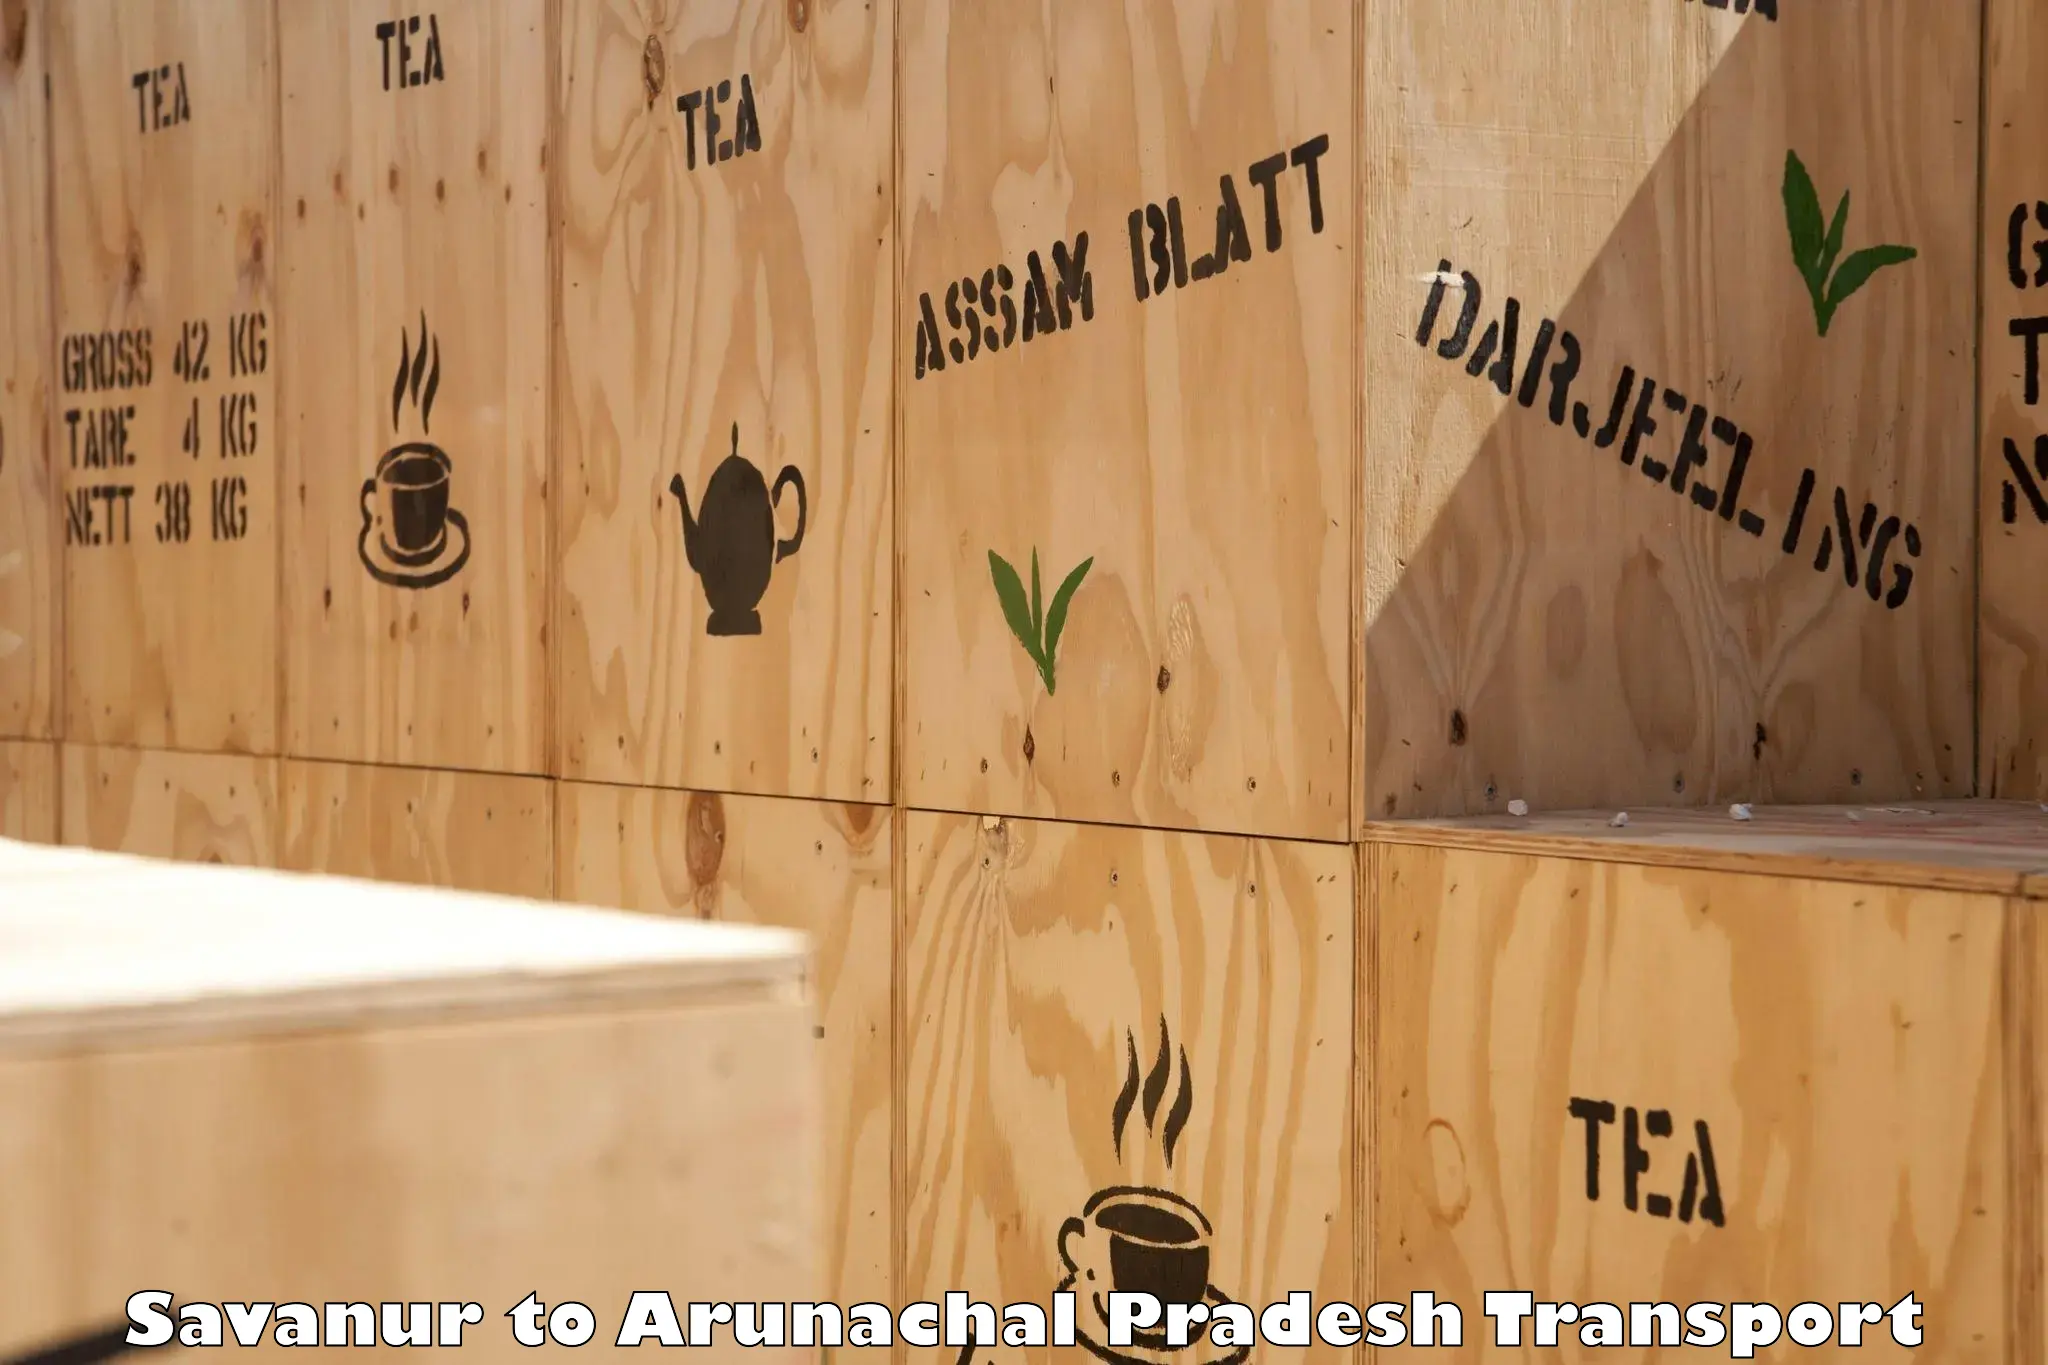 Furniture transport service Savanur to Arunachal Pradesh